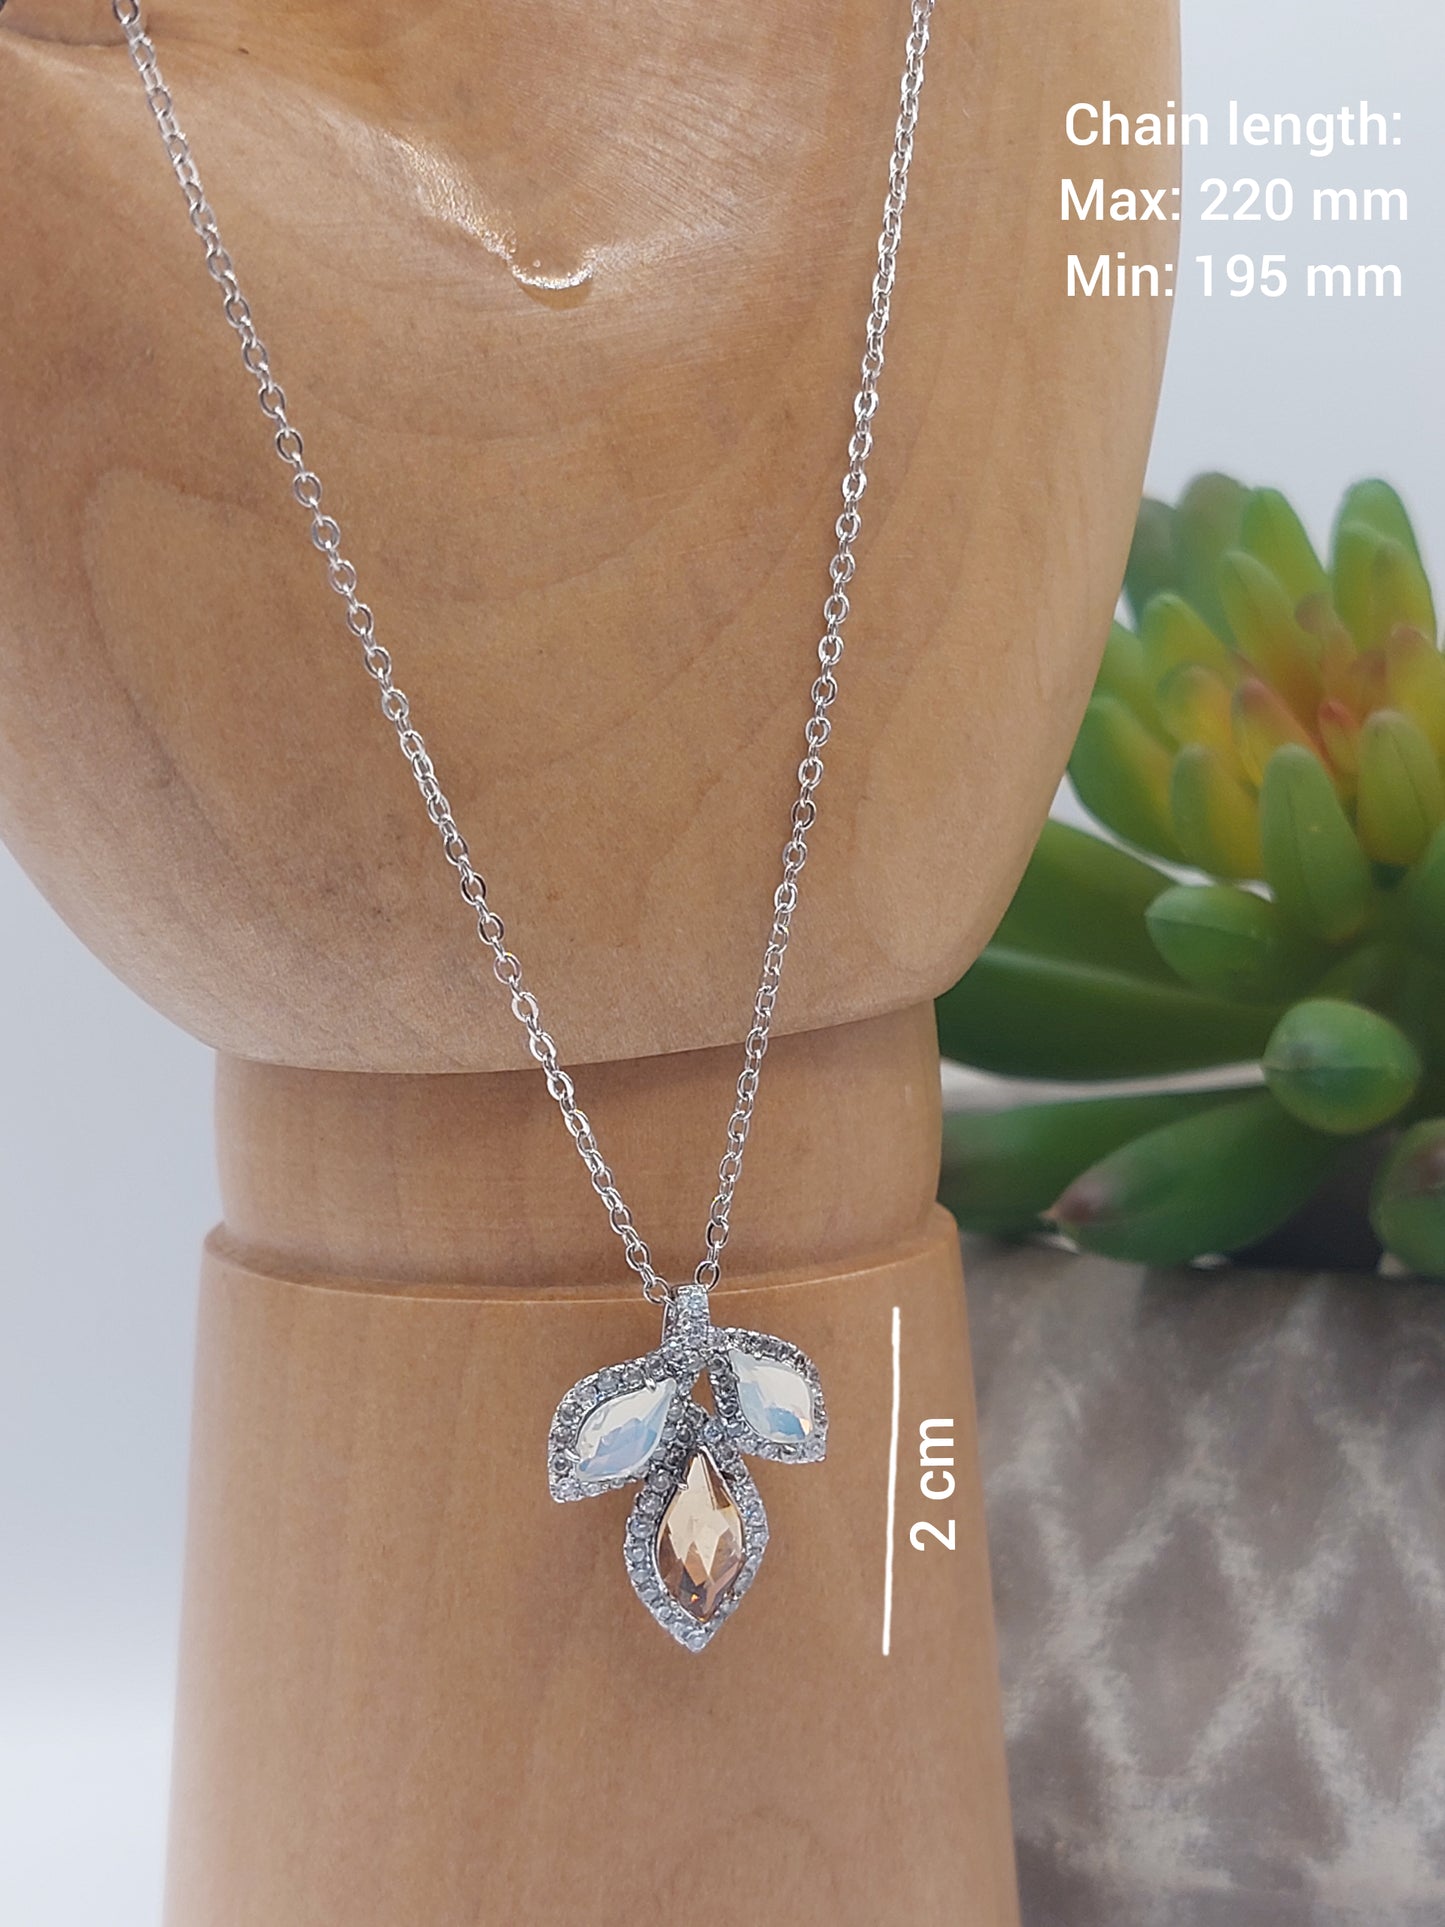 Single Flower Necklace with one Swarovski Stone